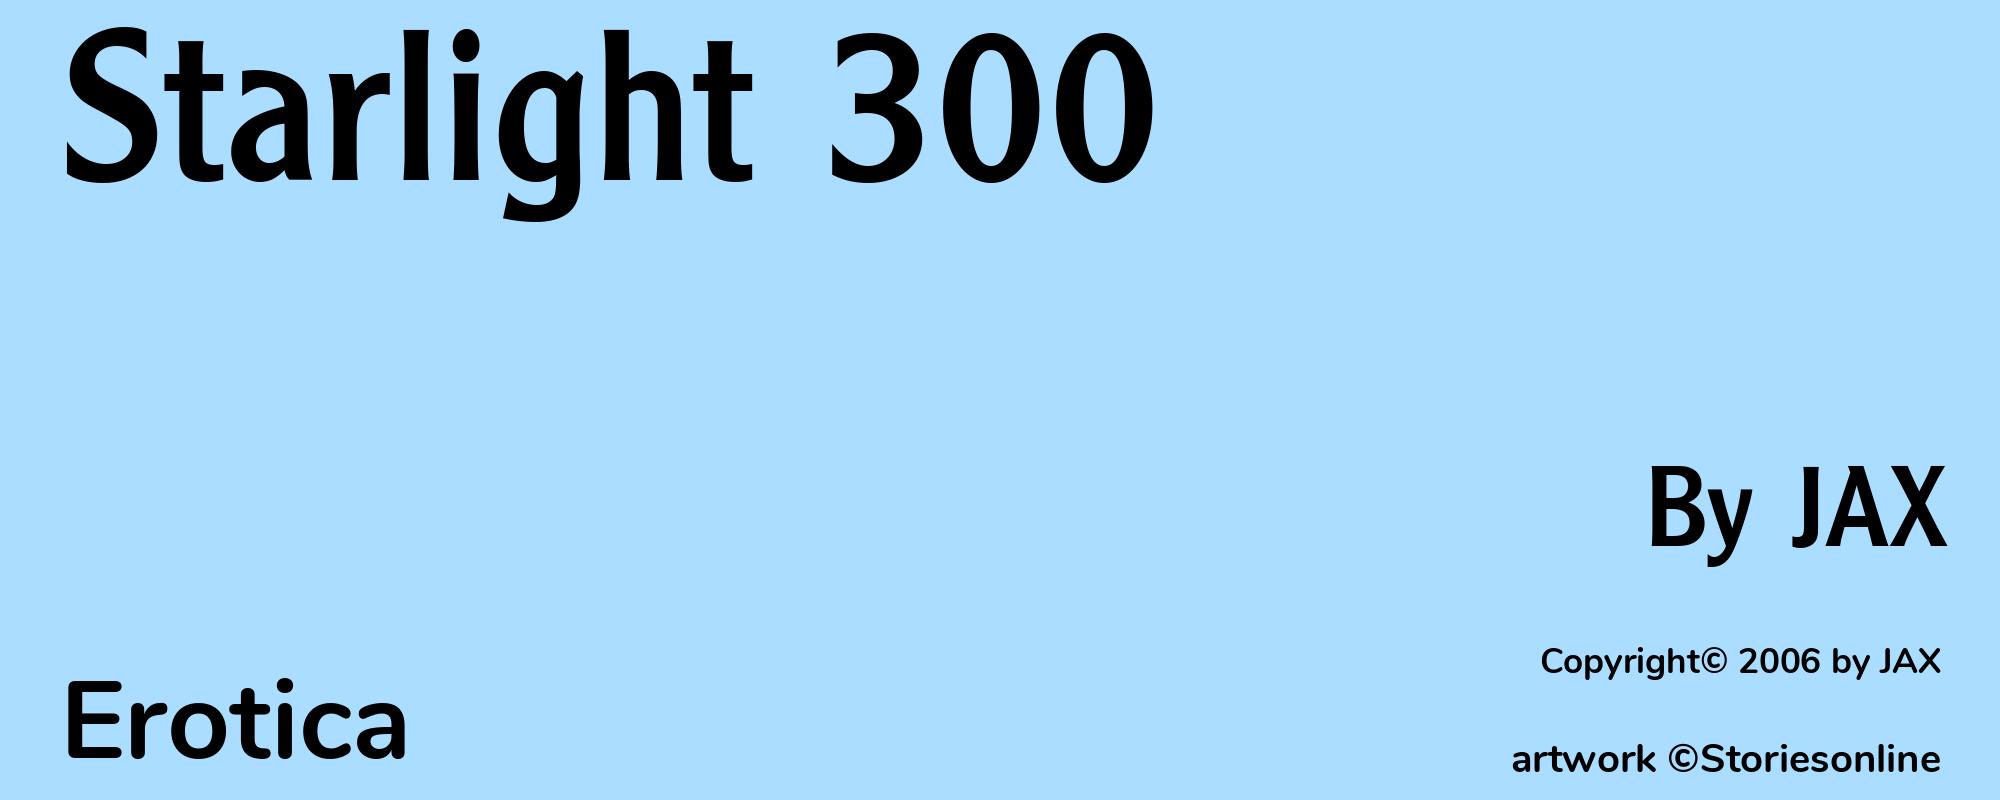 Starlight 300 - Cover